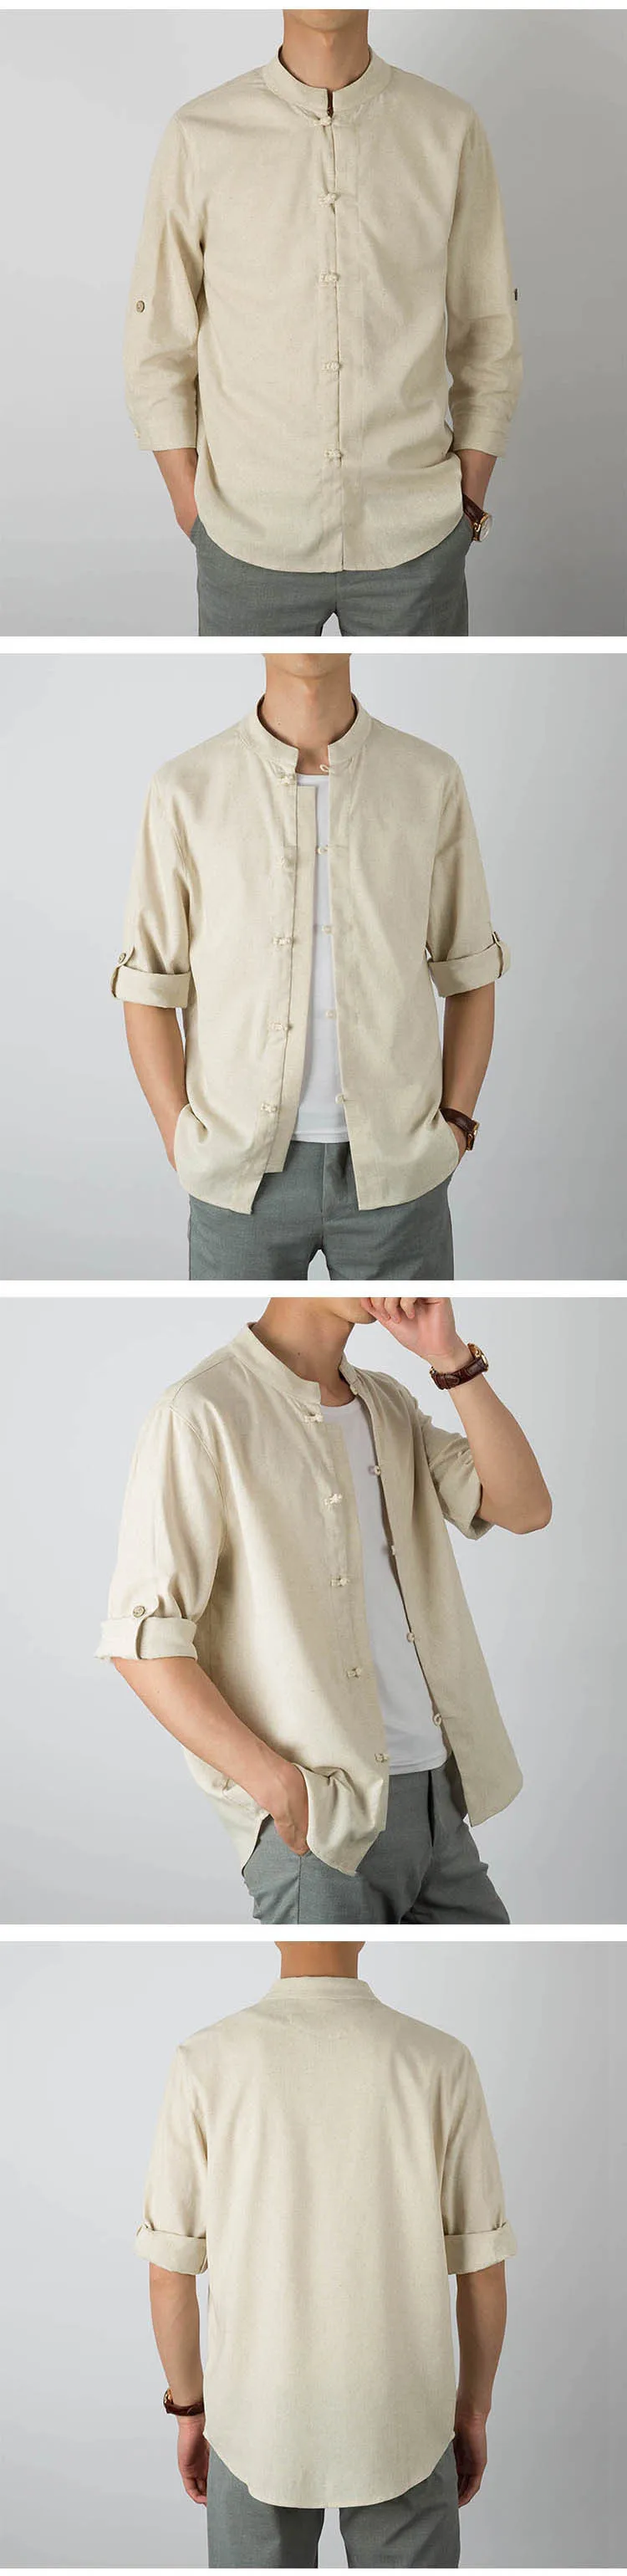 Новые мужские хлопковые льняные рубашки в китайском стиле, мужские винтажные повседневные льняные рубашки с рукавом три четверти, одноцветные топы, рубашки 5XL